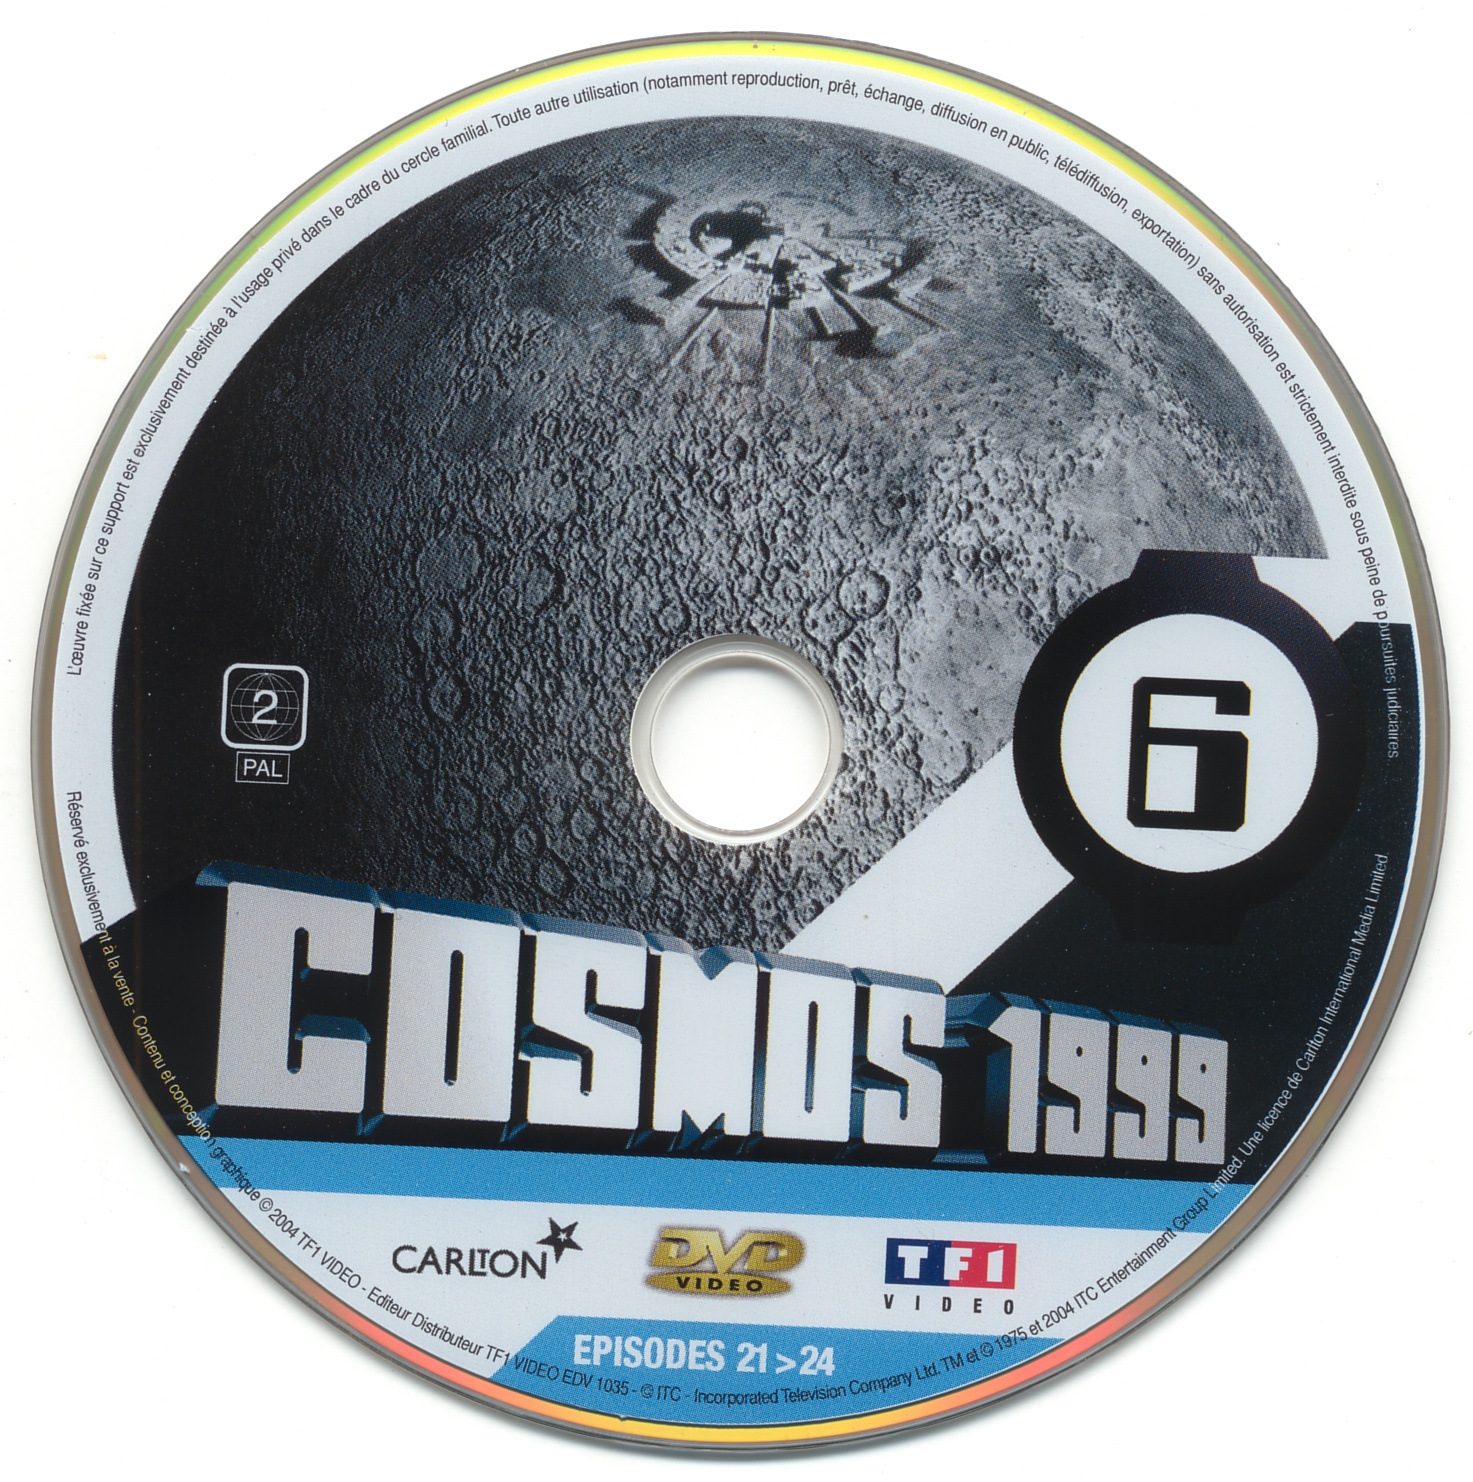 Cosmos 1999 saison 1 dvd 6